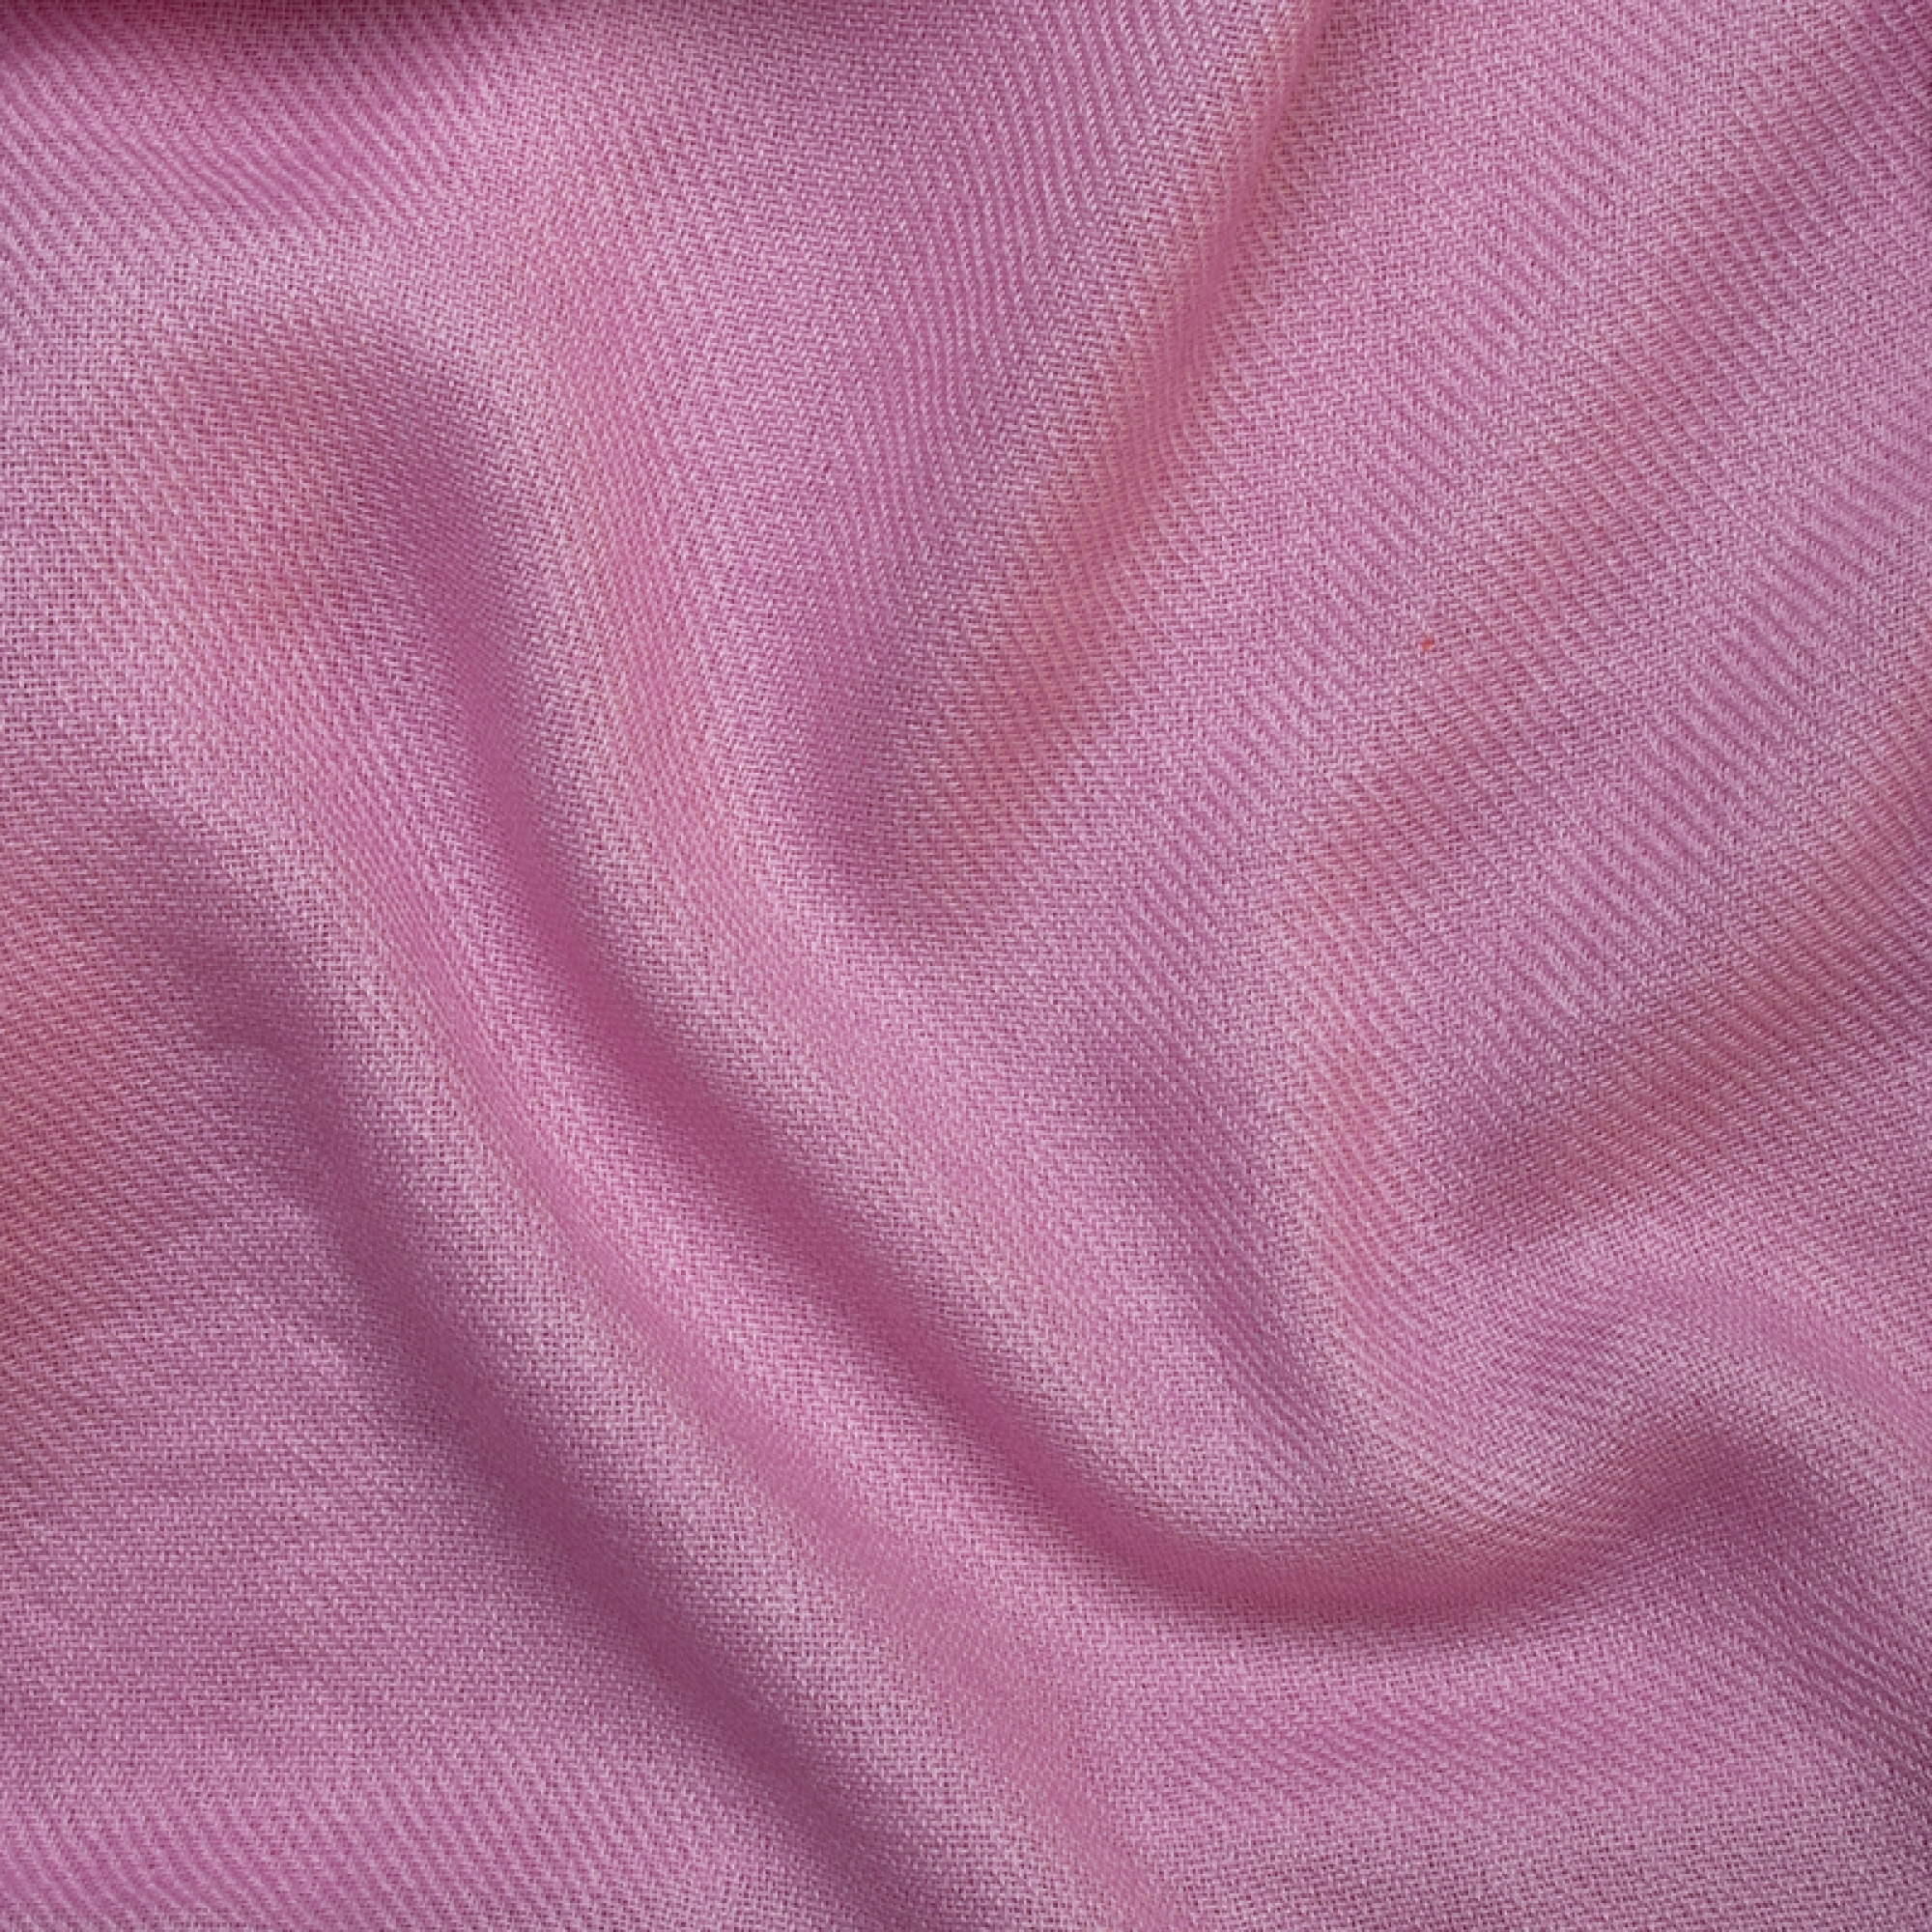 Cachemire accessoires couvertures plaids toodoo plain l 220 x 220 rose 220x220cm